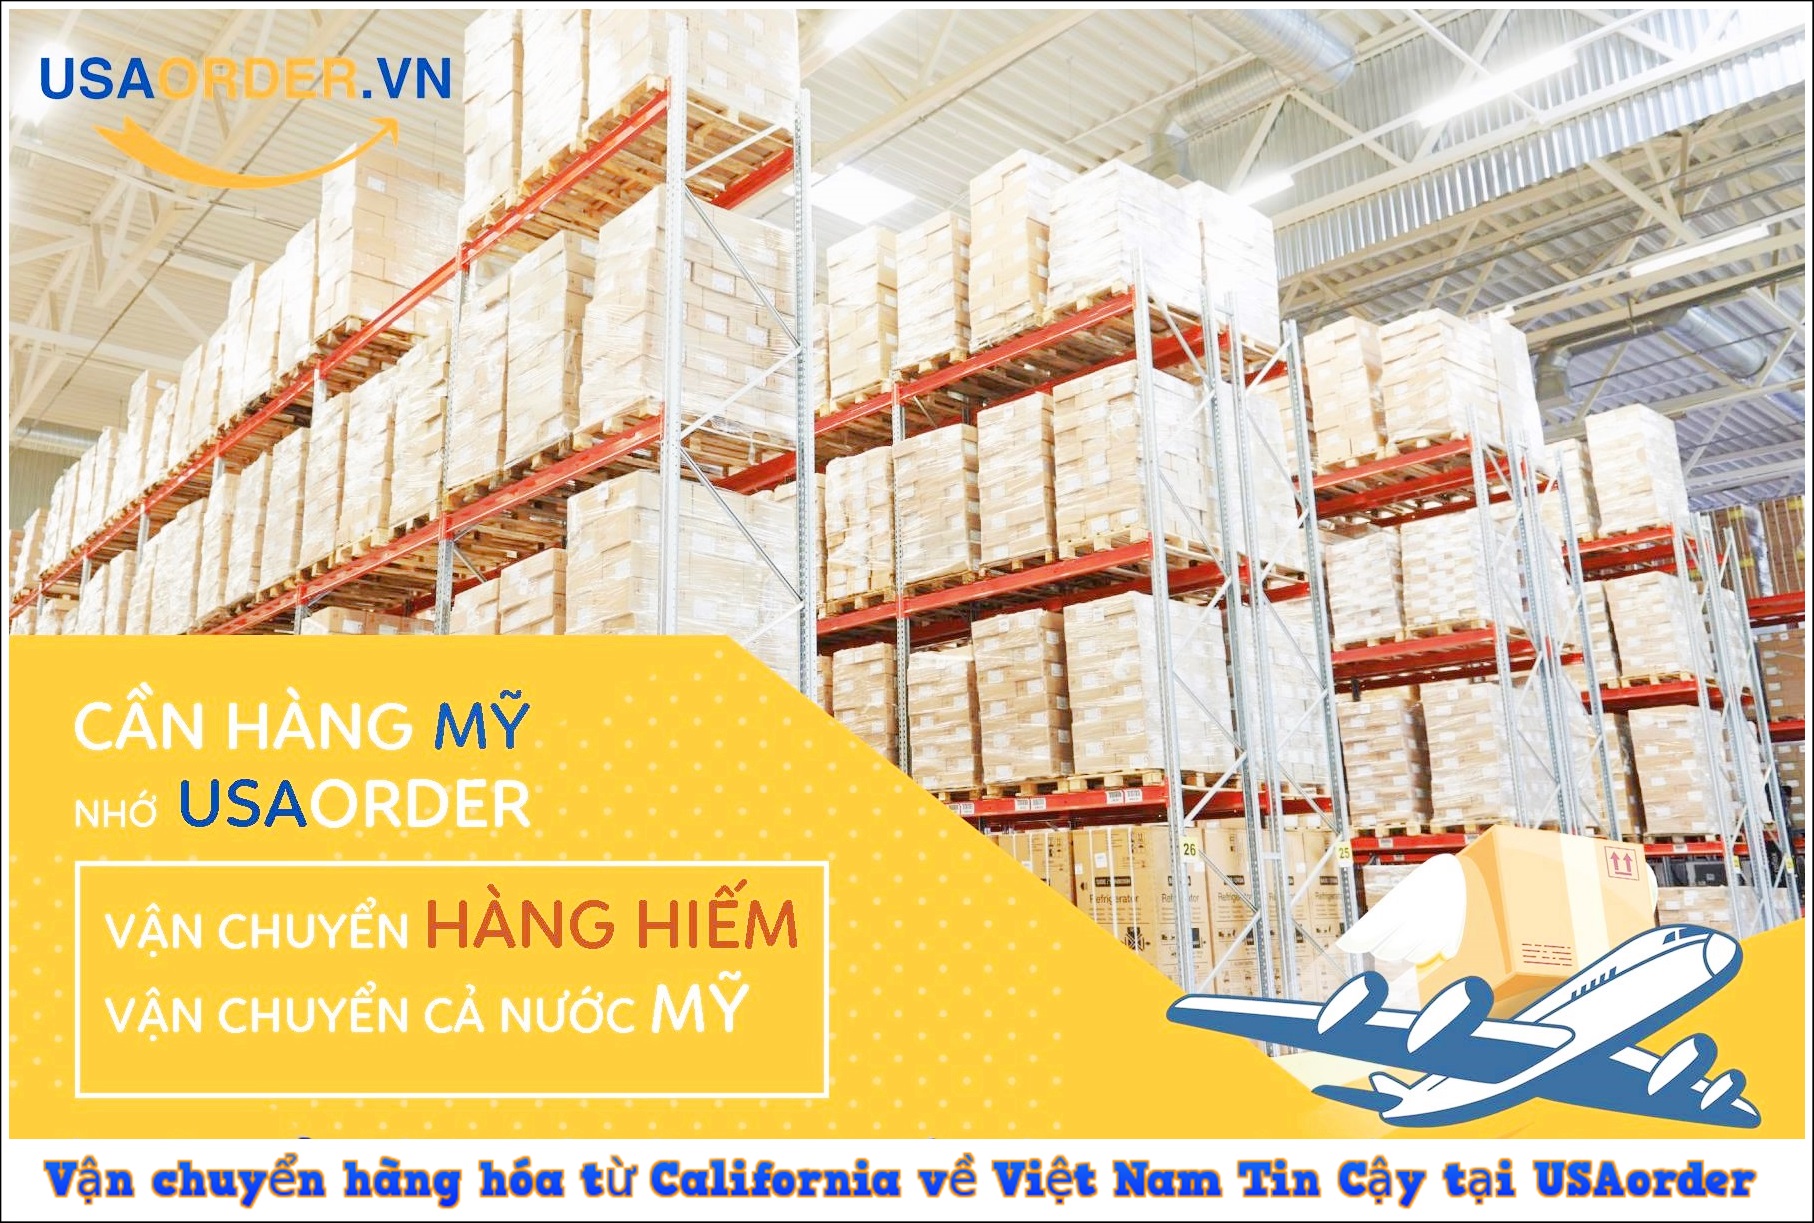 Vận chuyển hàng hóa từ California về Việt Nam Tin Cậy tại [USAOrder]